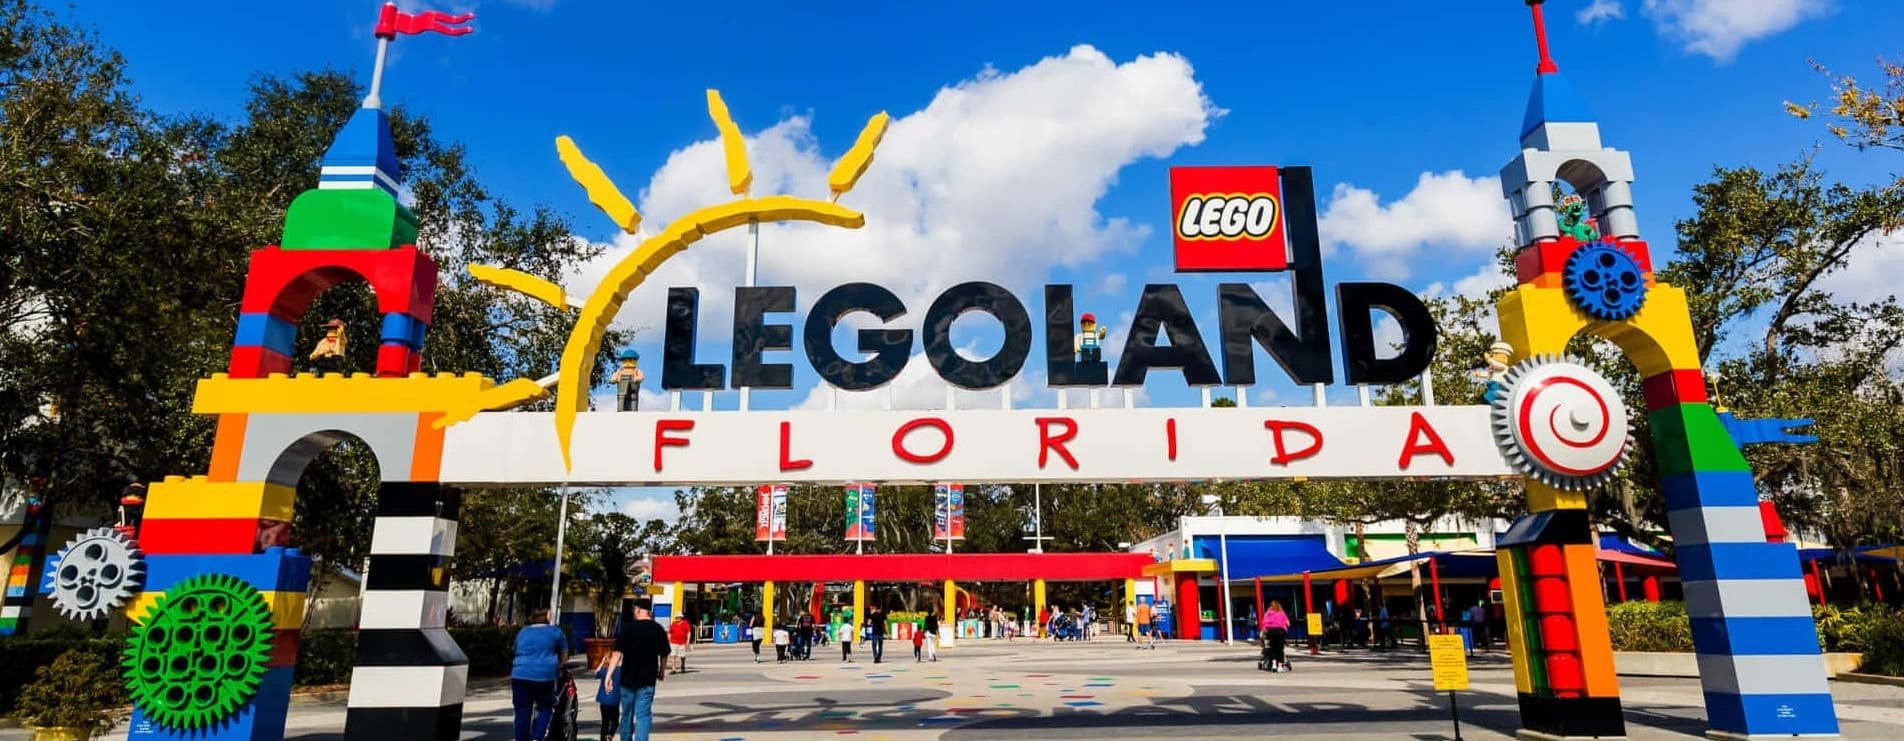 Самые лучшие парки развлечений в мире - Legoland Florida